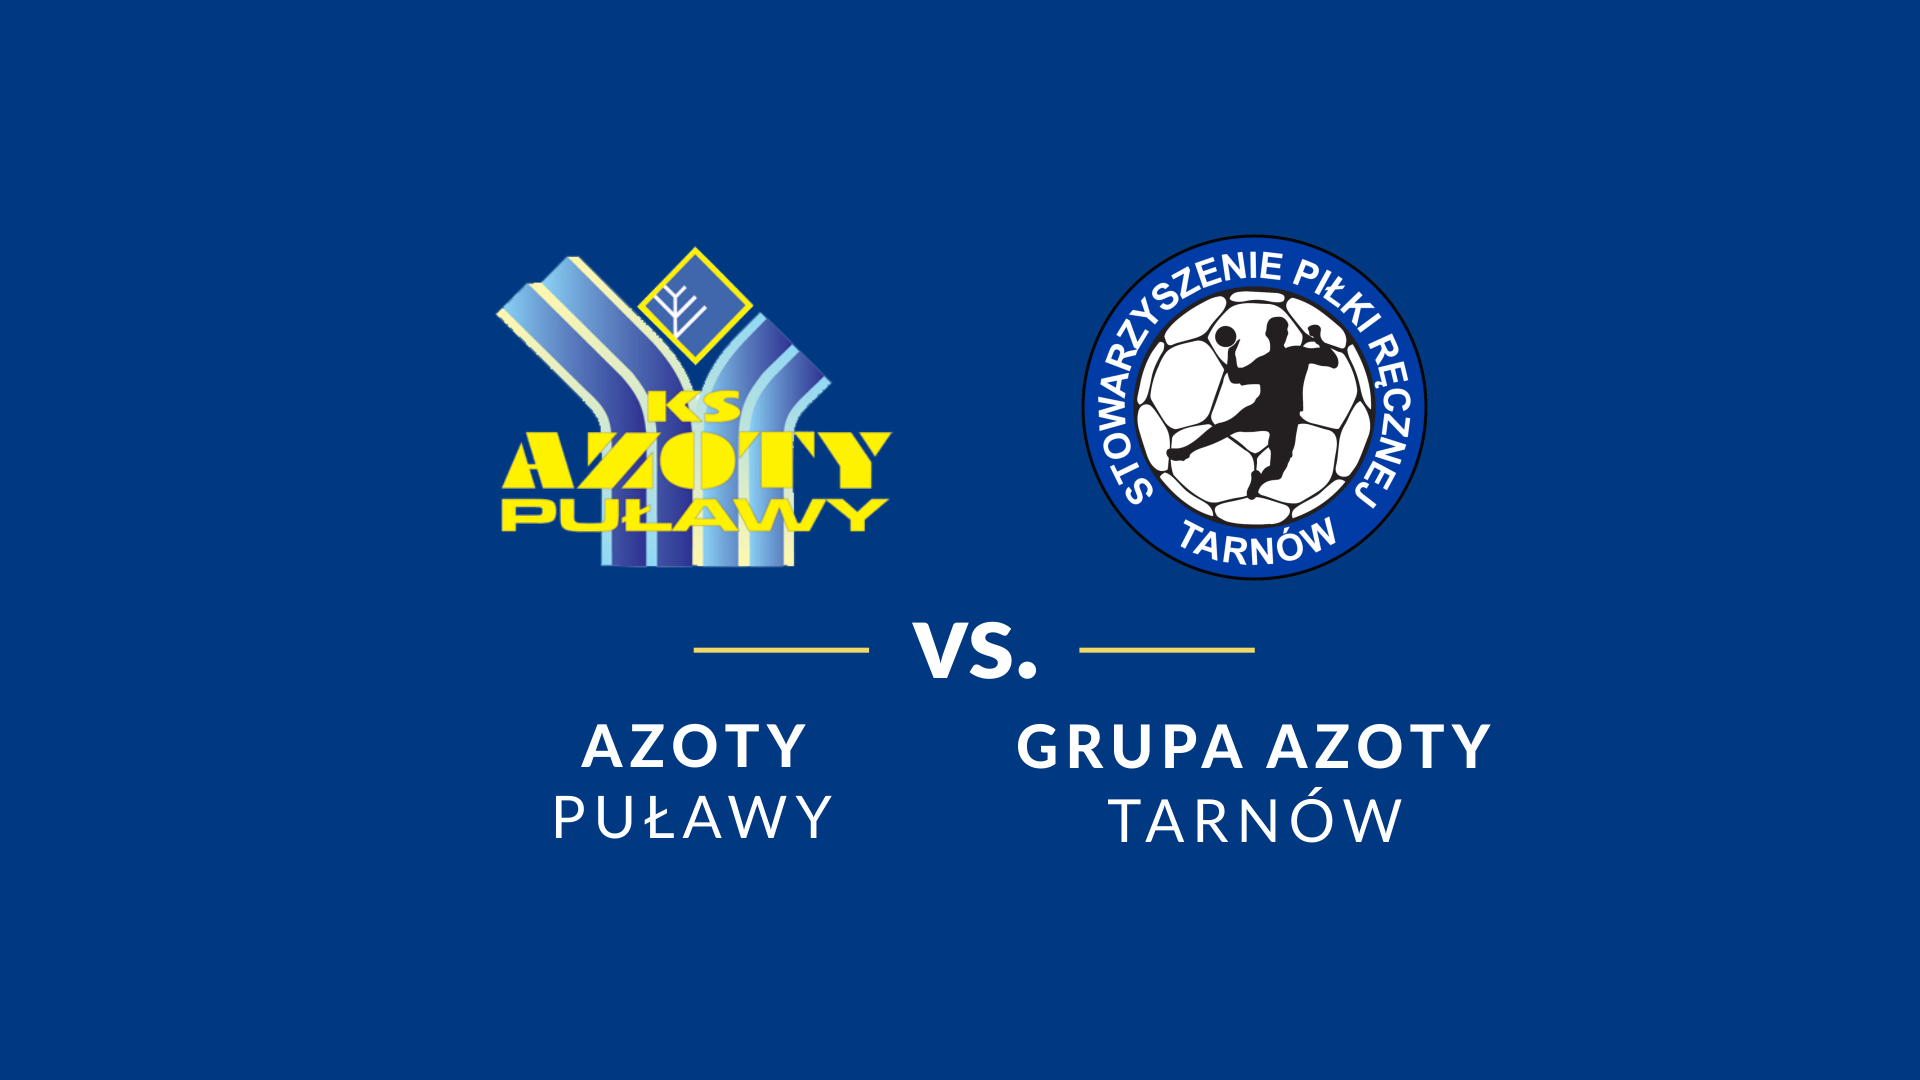 baner - logotypy Grupa Azoty Tarnów i Azotów Puławy